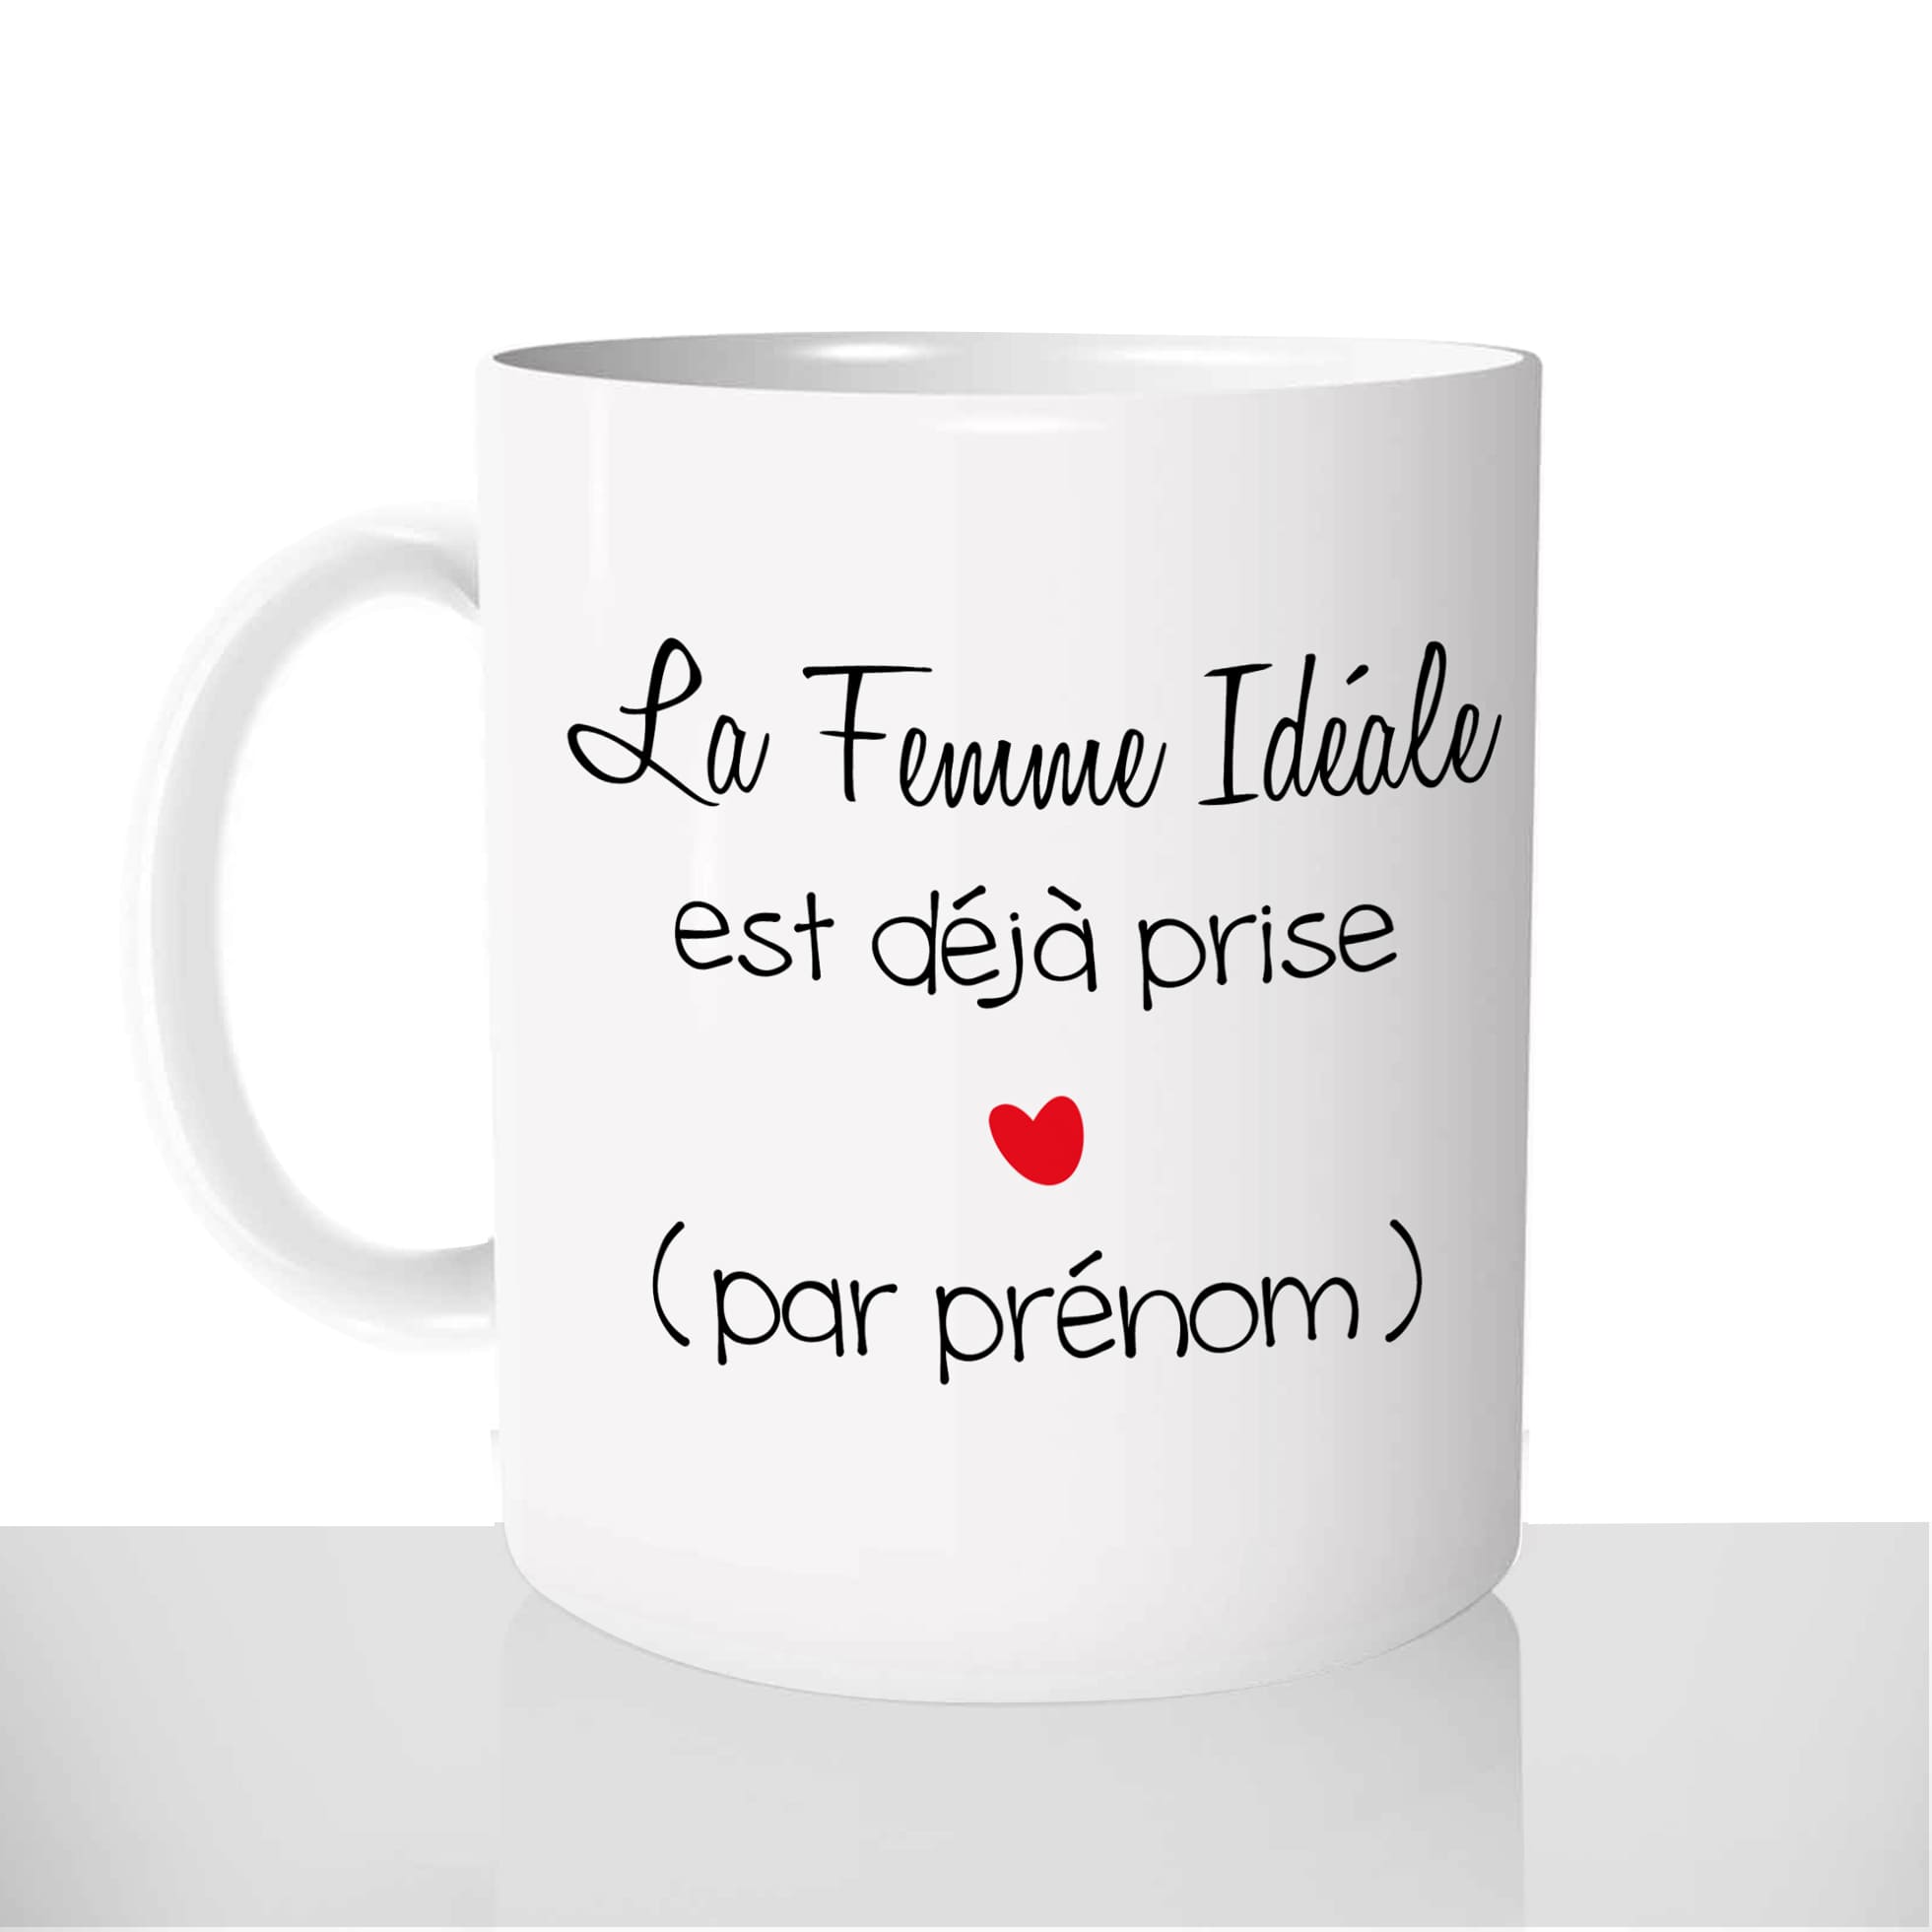 mug-blanc-céramique-personnalisable-tasse-11oz-saint-valentin-femme-idéale-couple-amour-prenom-personnalisé-fun-idée-cadeau-original